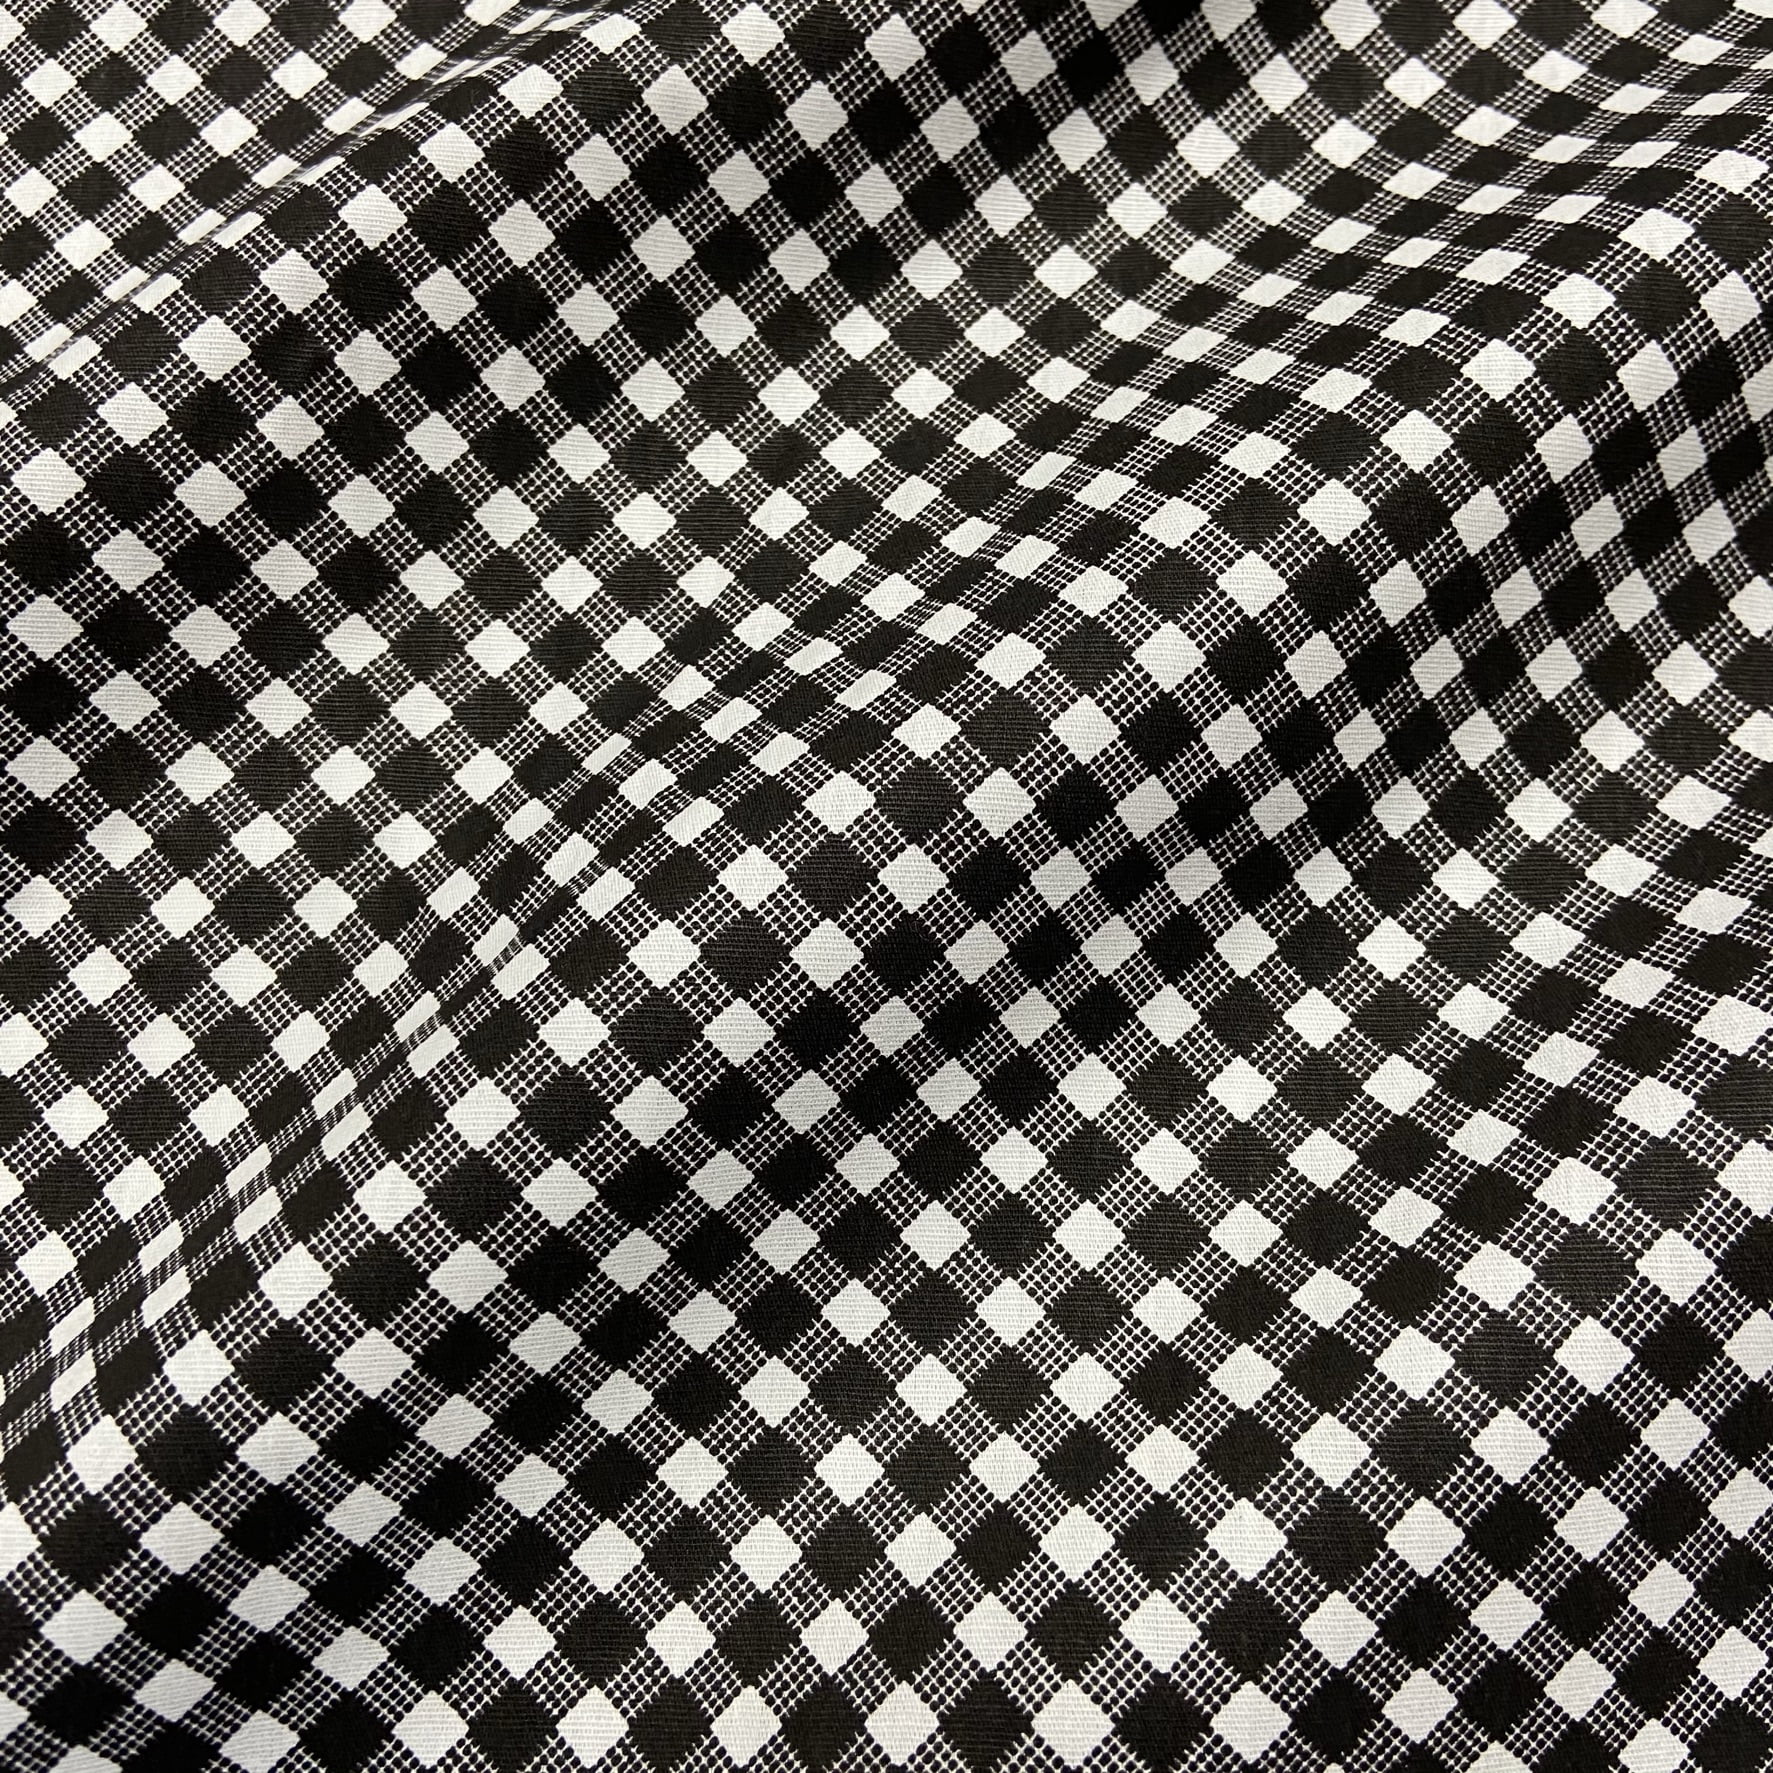 Textura de tecido de algodão padrão xadrez branco e preto